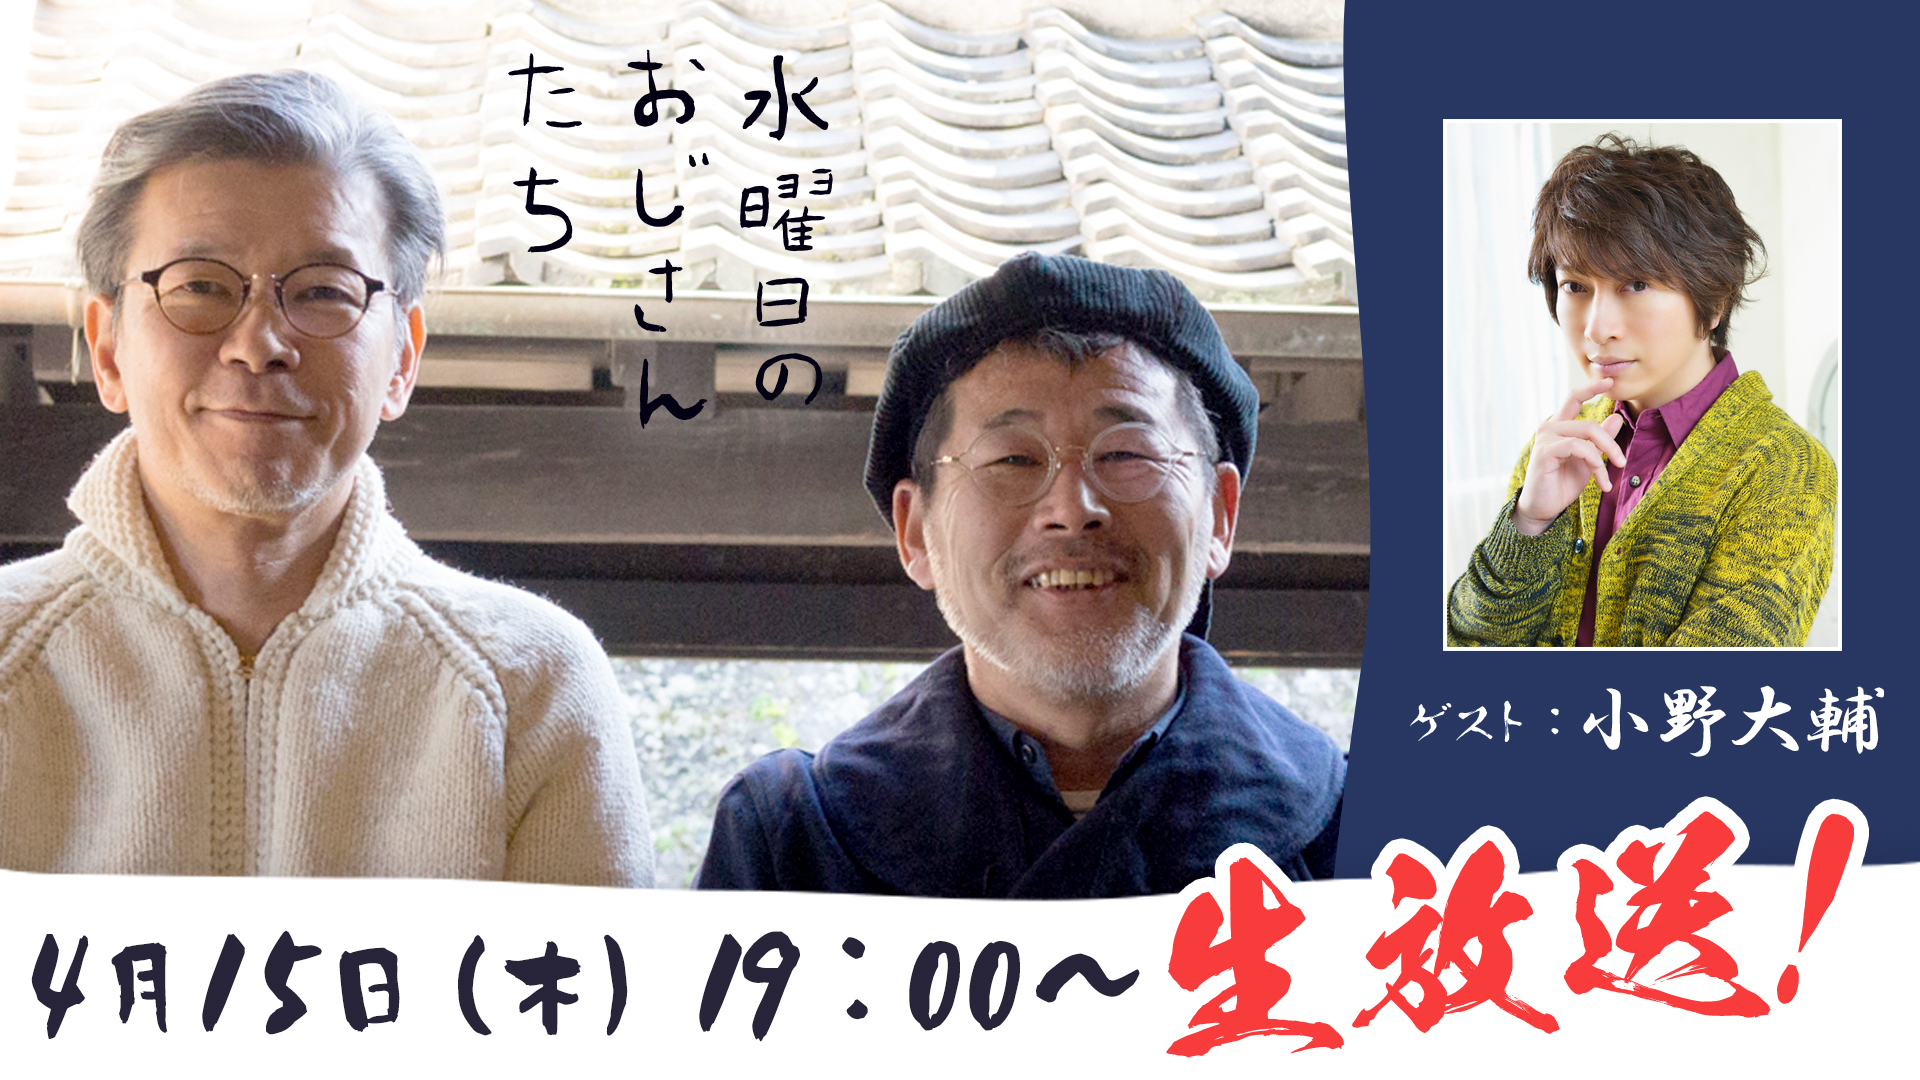 声優の小野大輔さんが登場 水曜どうでしょう 幹部のニコニコチャンネル 水曜日のおじさんたち で4月15日 木 19 00 生放送決定 株式会社kadokawaのプレスリリース